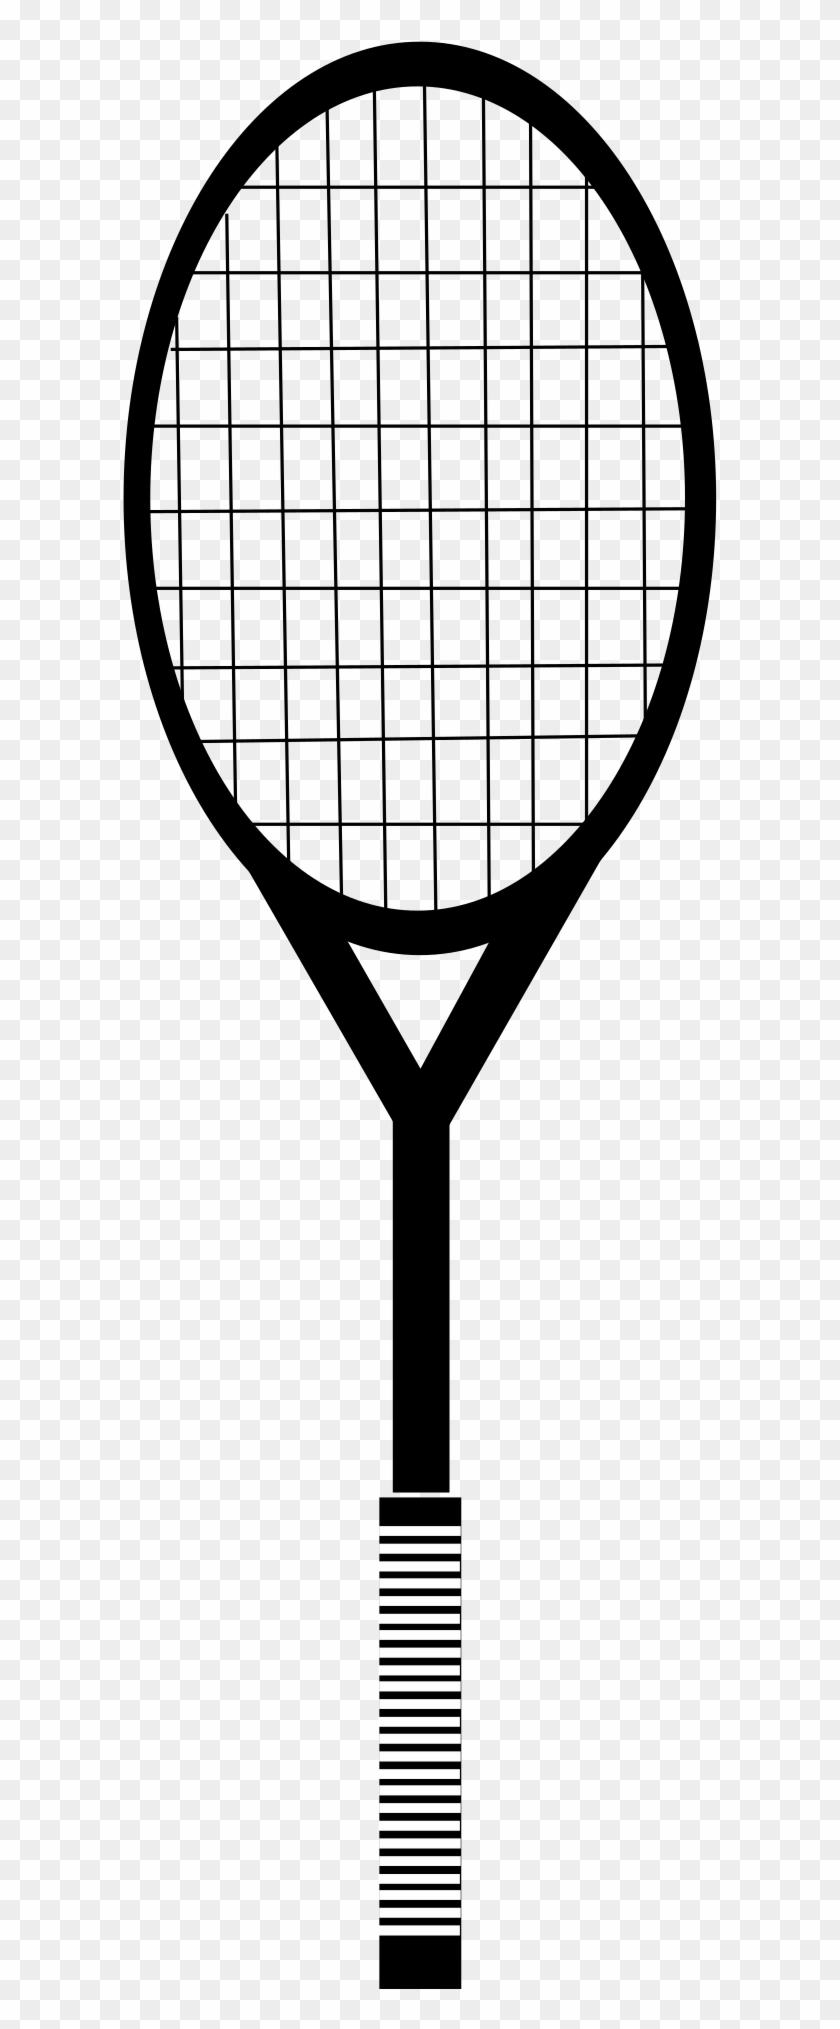 Download - Tennis Racket #58422